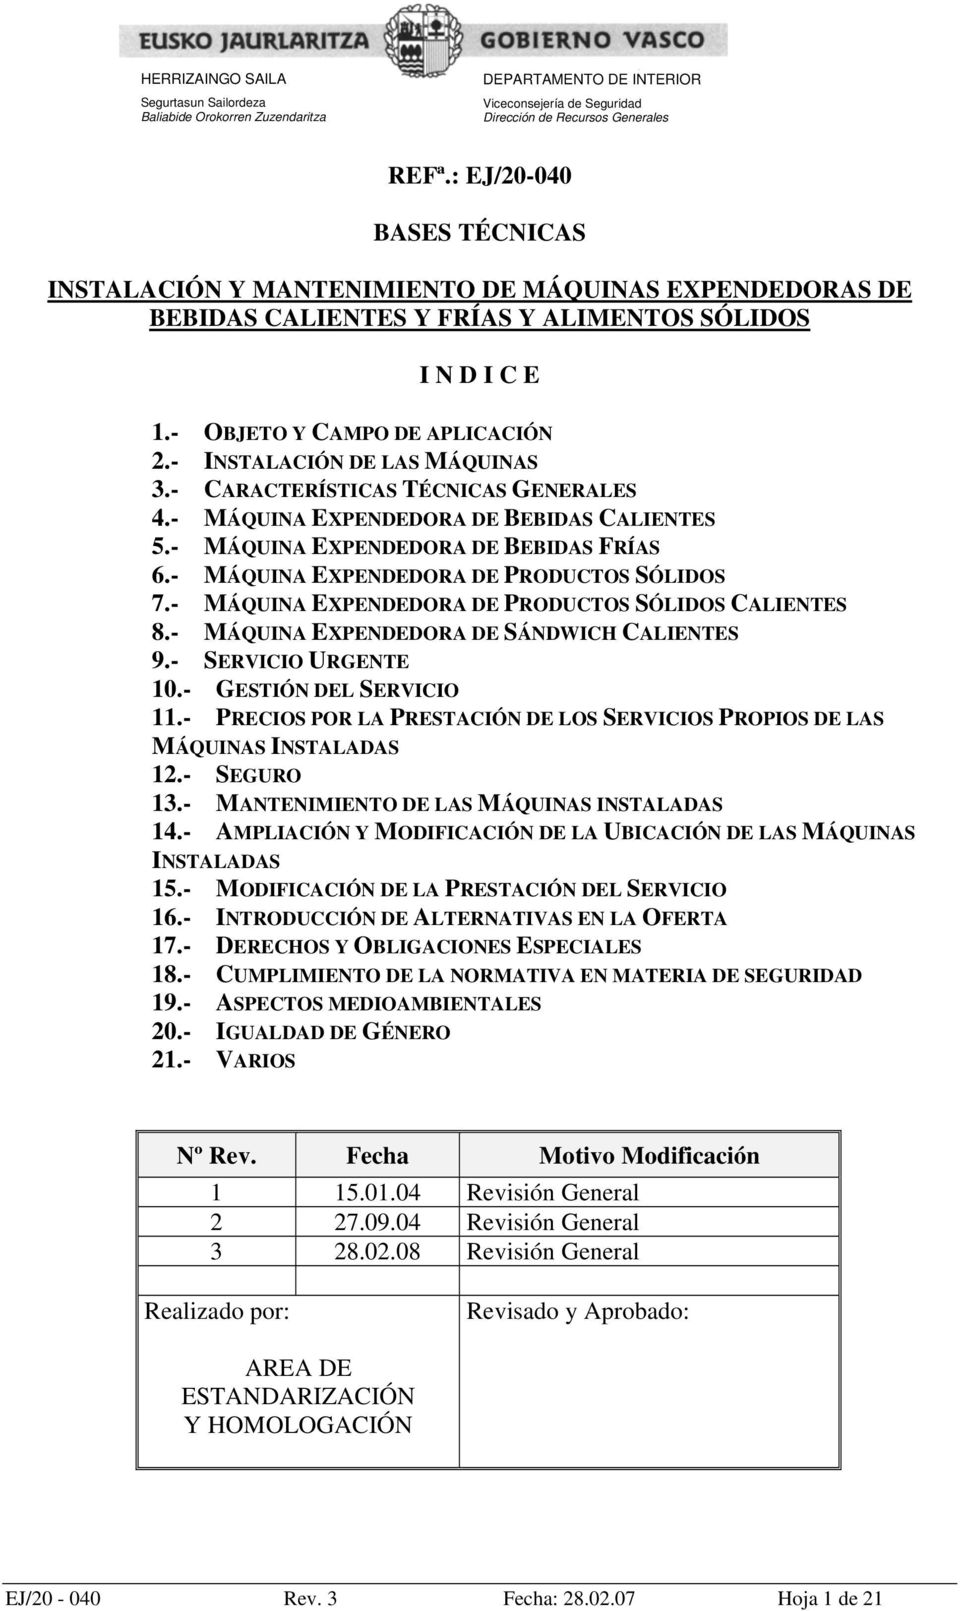 - INSTALACIÓN DE LAS MÁQUINAS 3.- CARACTERÍSTICAS TÉCNICAS GENERALES 4.- MÁQUINA EXPENDEDORA DE BEBIDAS CALIENTES 5.- MÁQUINA EXPENDEDORA DE BEBIDAS FRÍAS 6.